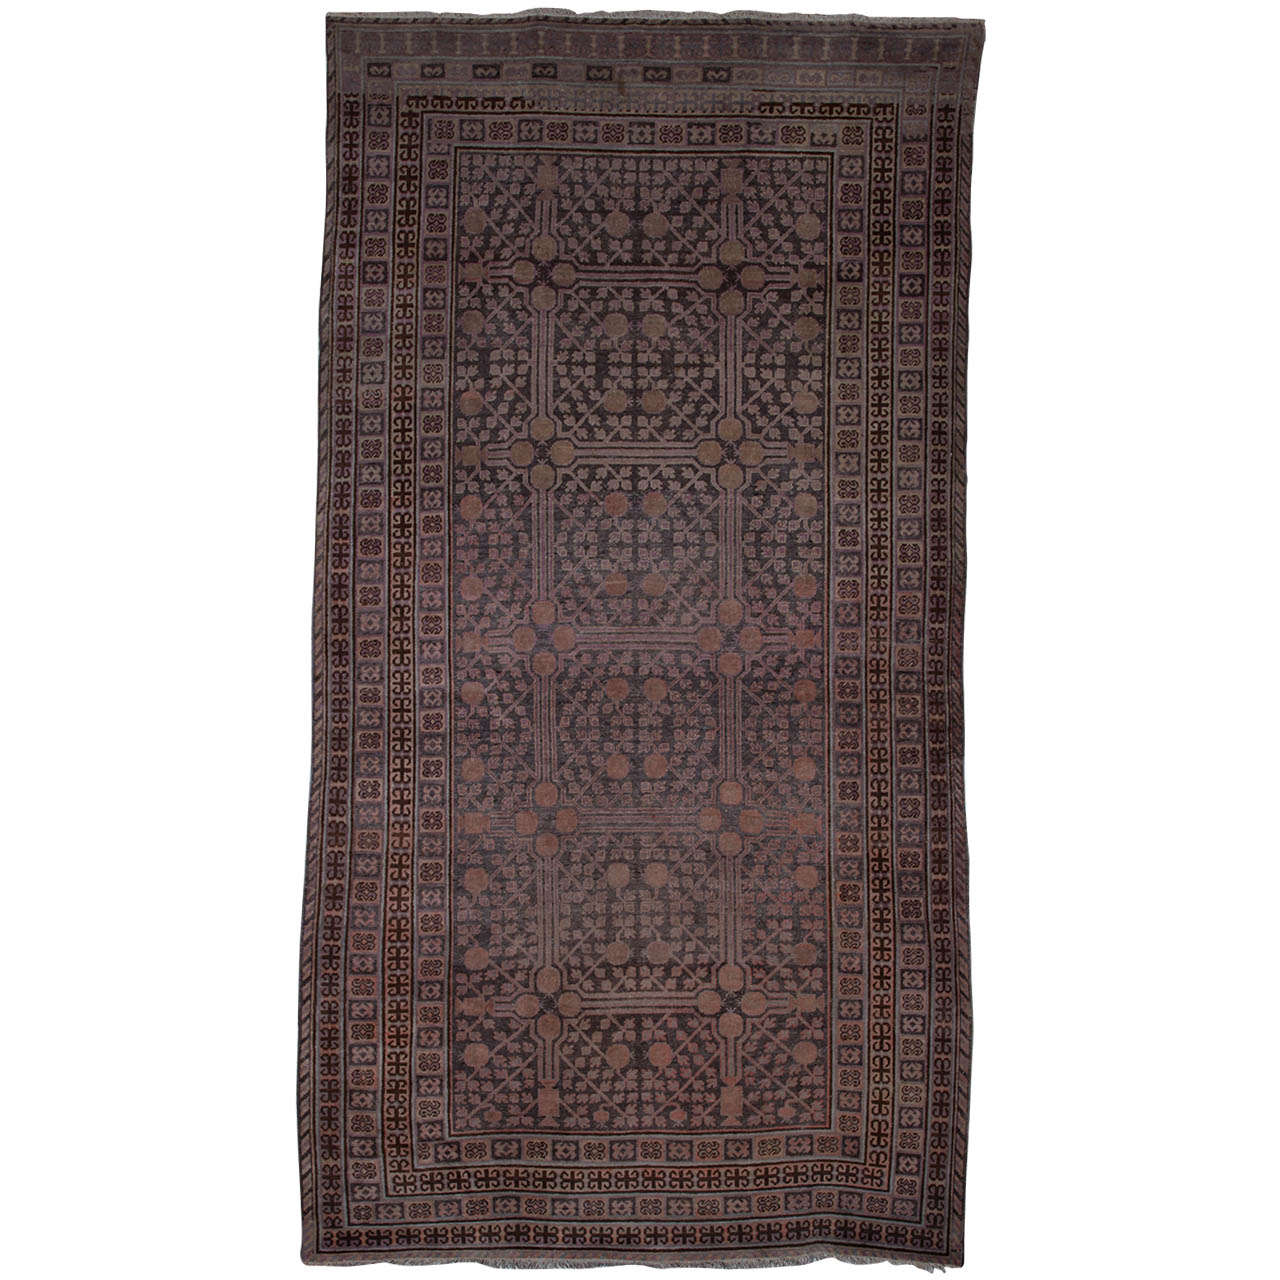 Seltener antiker Kothan-Teppich oder Teppich aus dem späten 19. Jahrhundert 